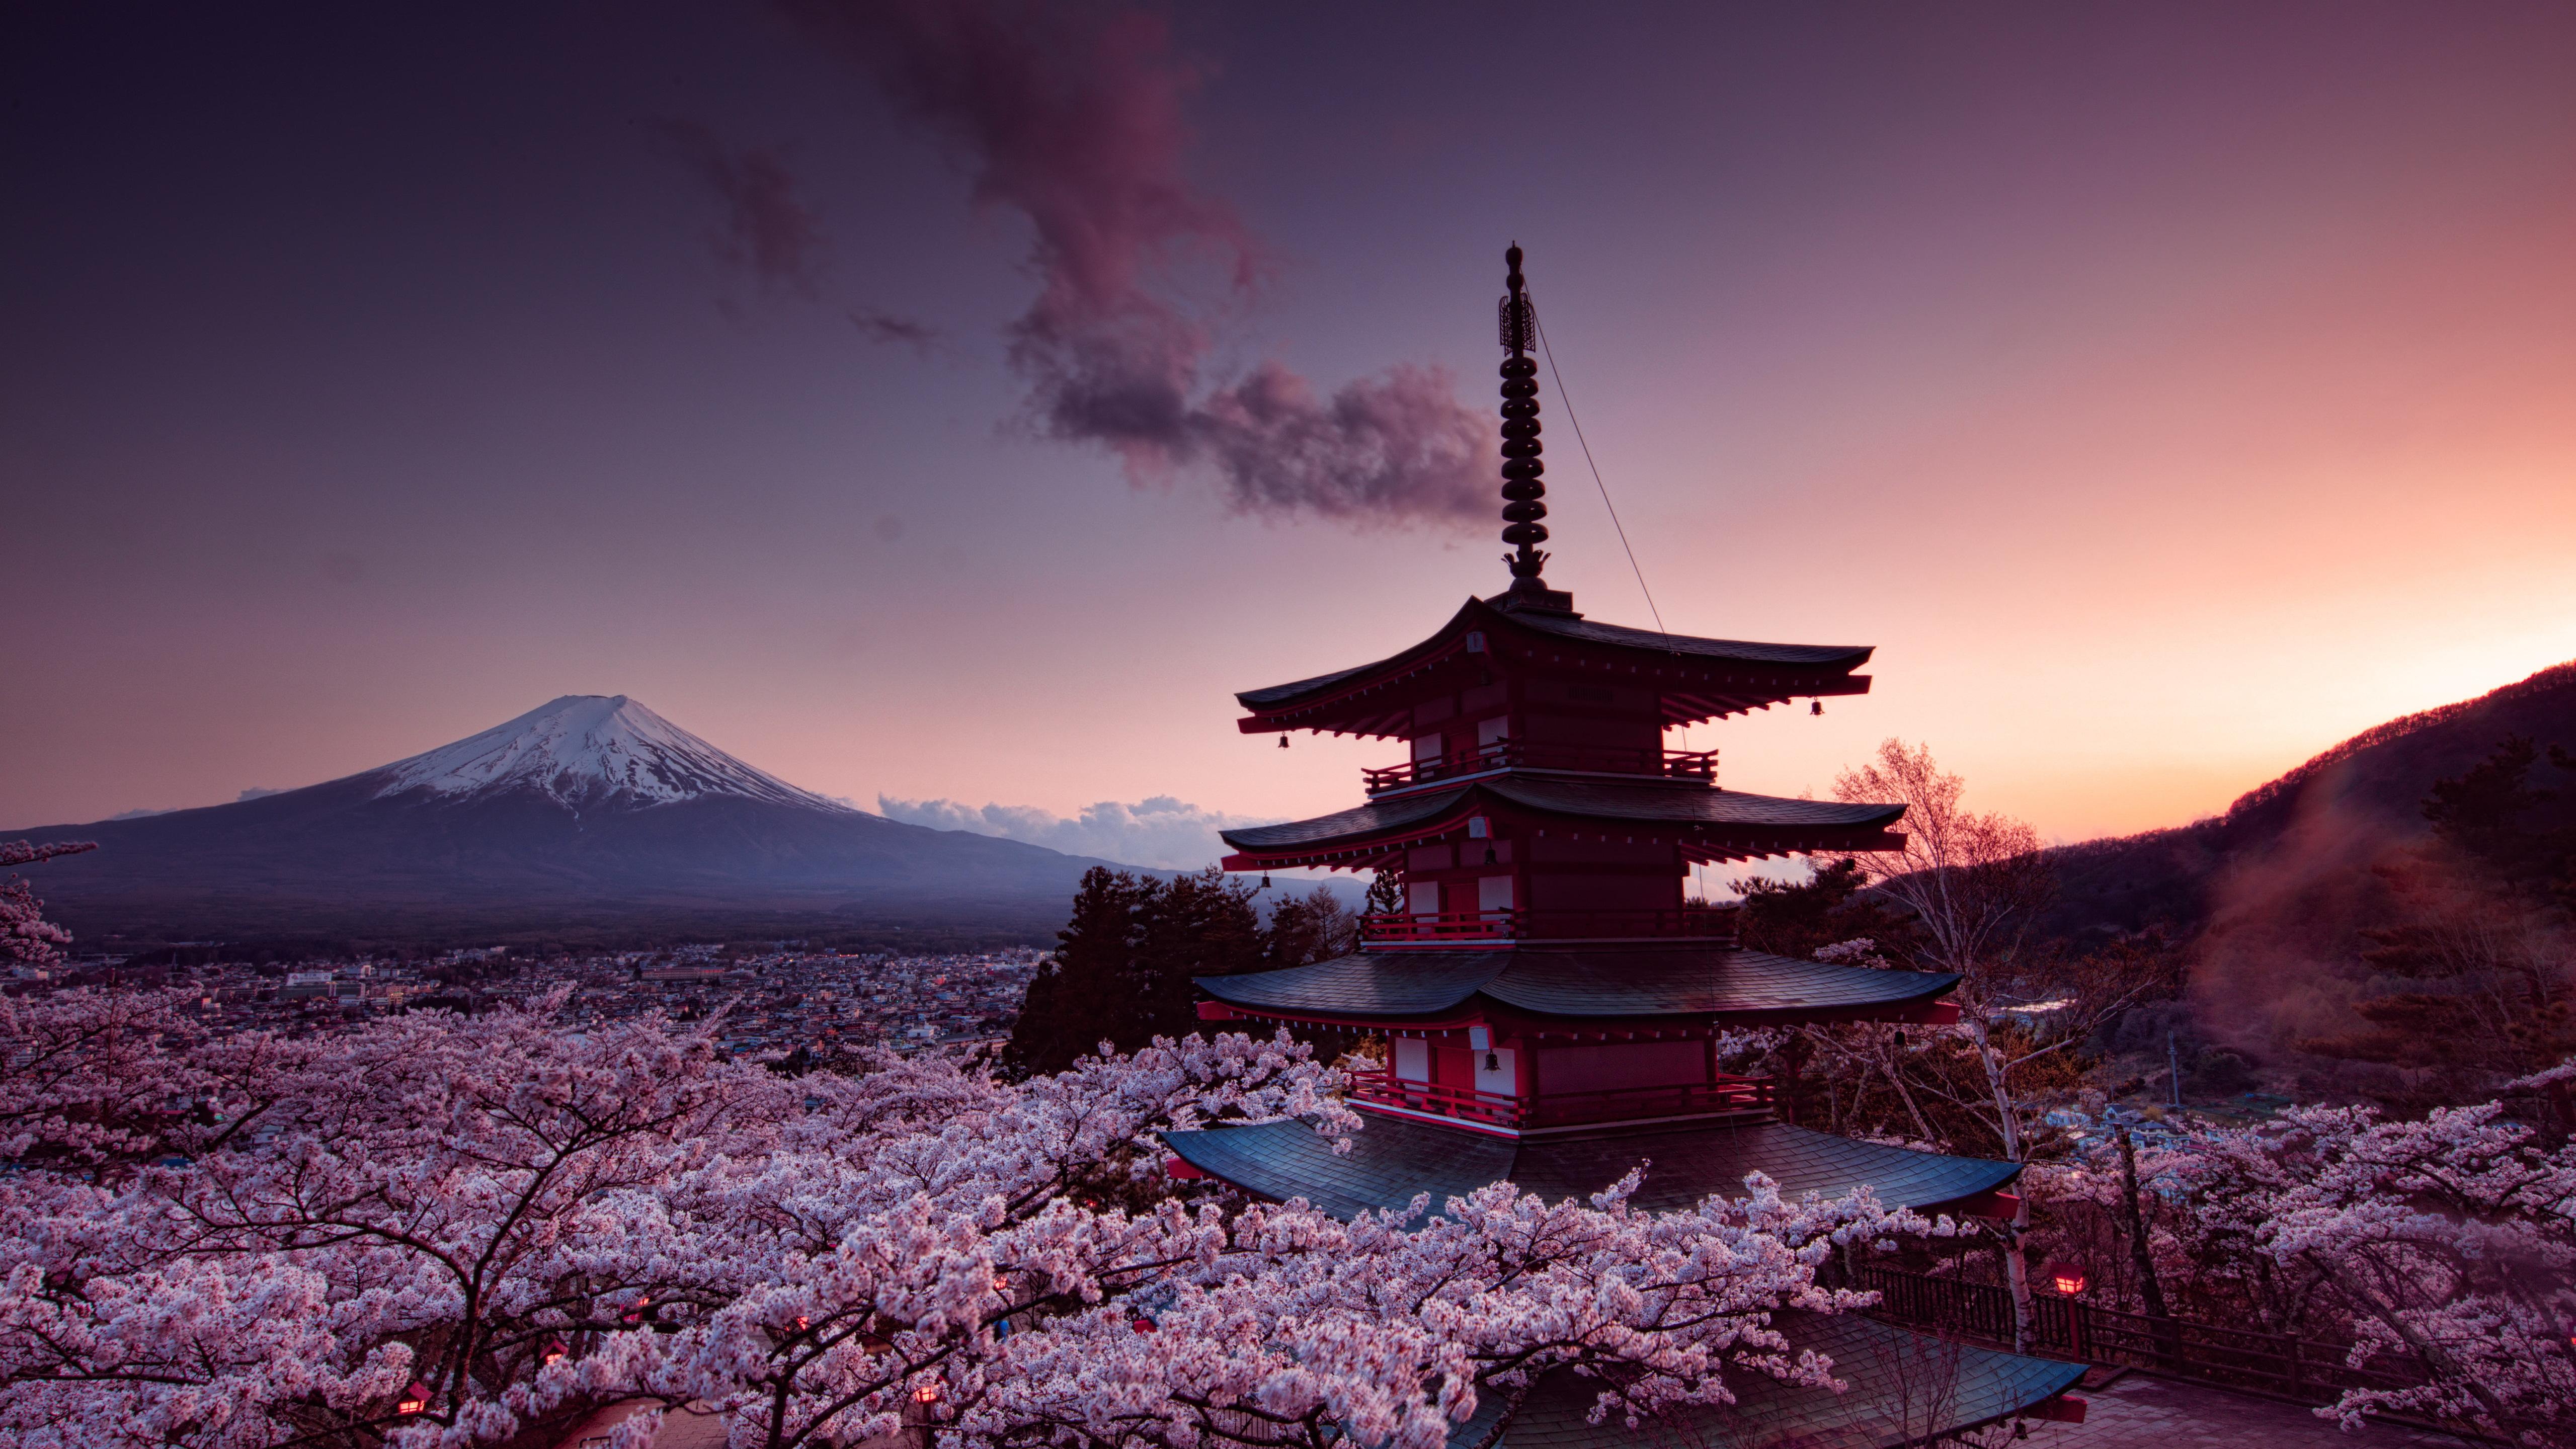 Nhật Bản (Japan): Xem hình ảnh Nhật Bản để khám phá vẻ đẹp của xứ sở hoa anh đào, những ngôi đền linh thiêng, những khu phố ồn ào và sự tiến bộ của một đất nước hiện đại. Bạn sẽ có một chuyến phiêu lưu tuyệt vời với những cảnh quan độc đáo và phong cách văn hóa độc đáo.